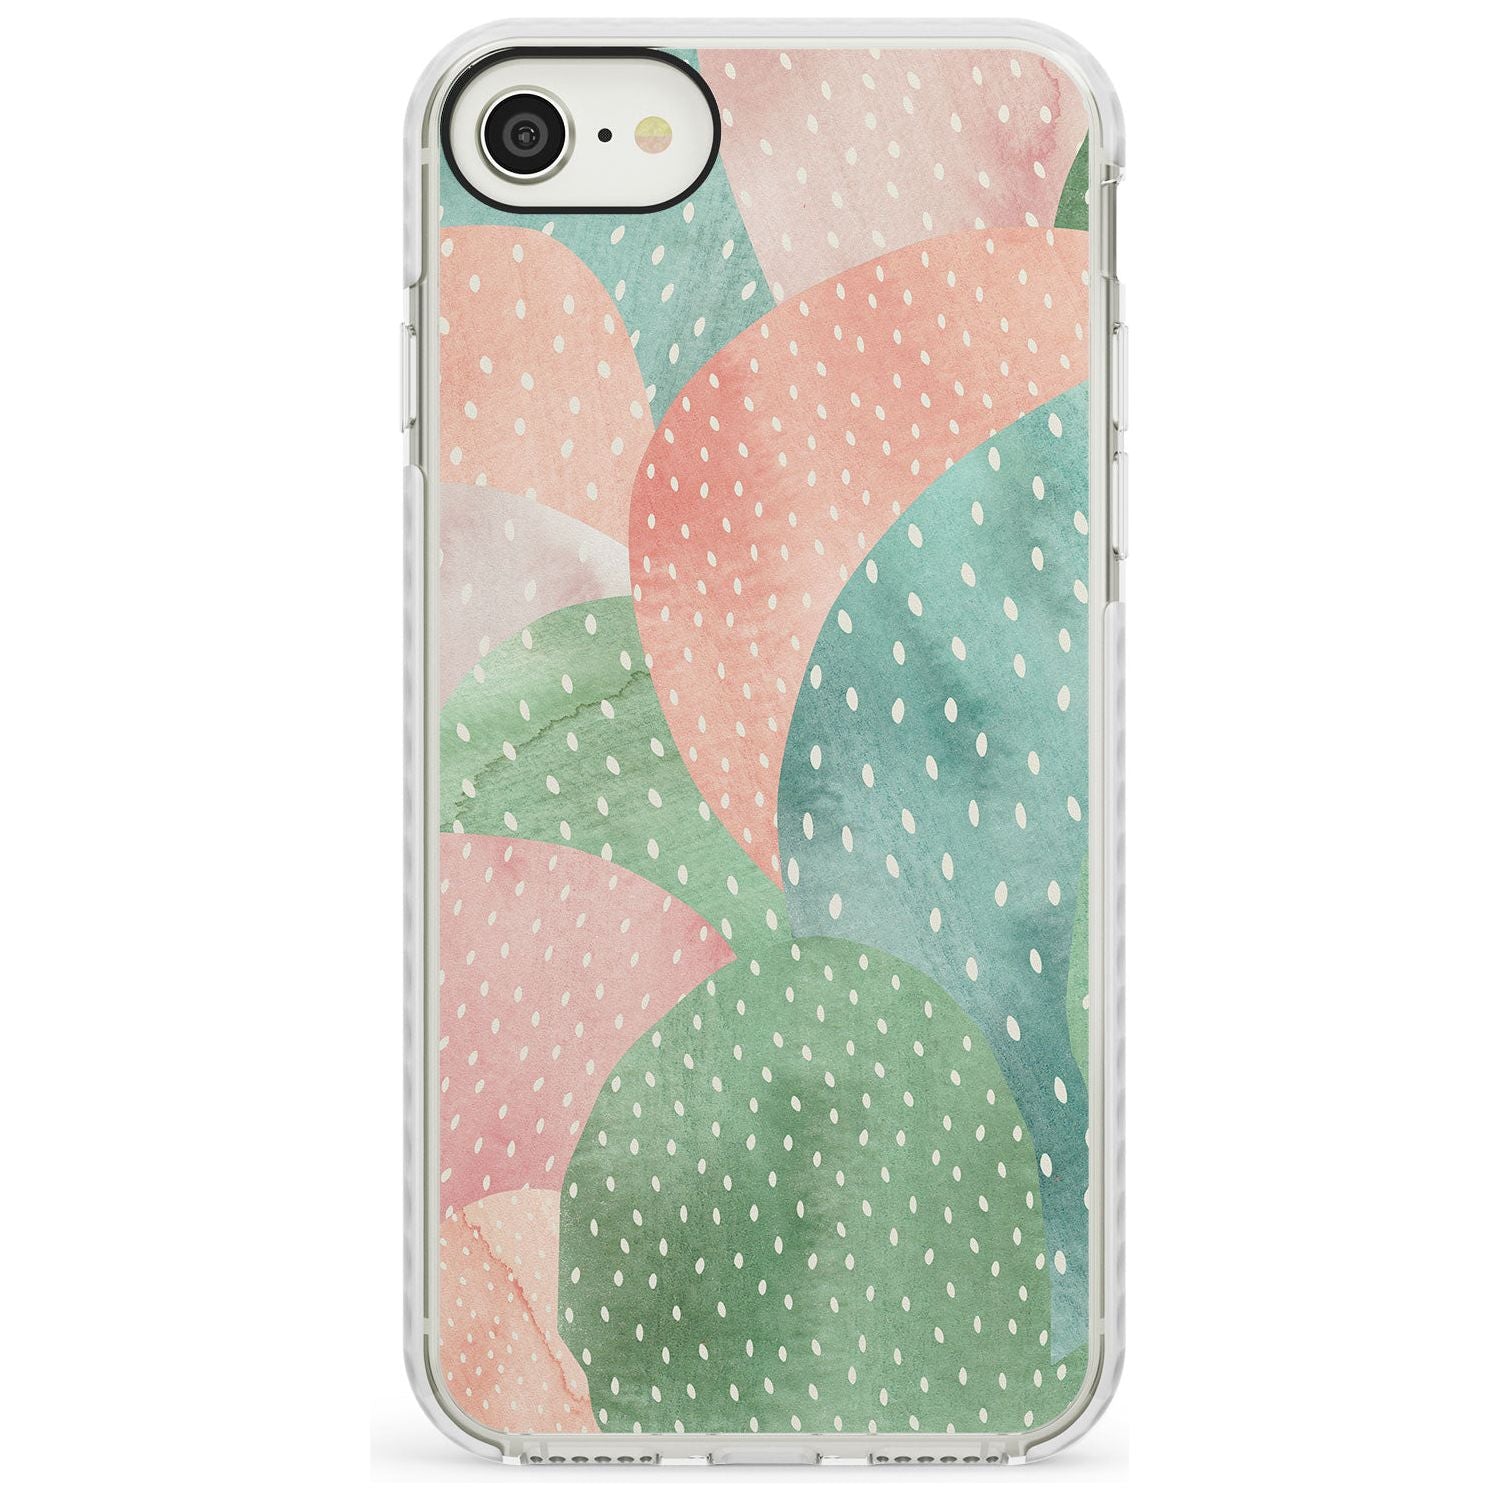 Colourful Close-Up Cacti Design Impact Phone Case for iPhone SE 8 7 Plus